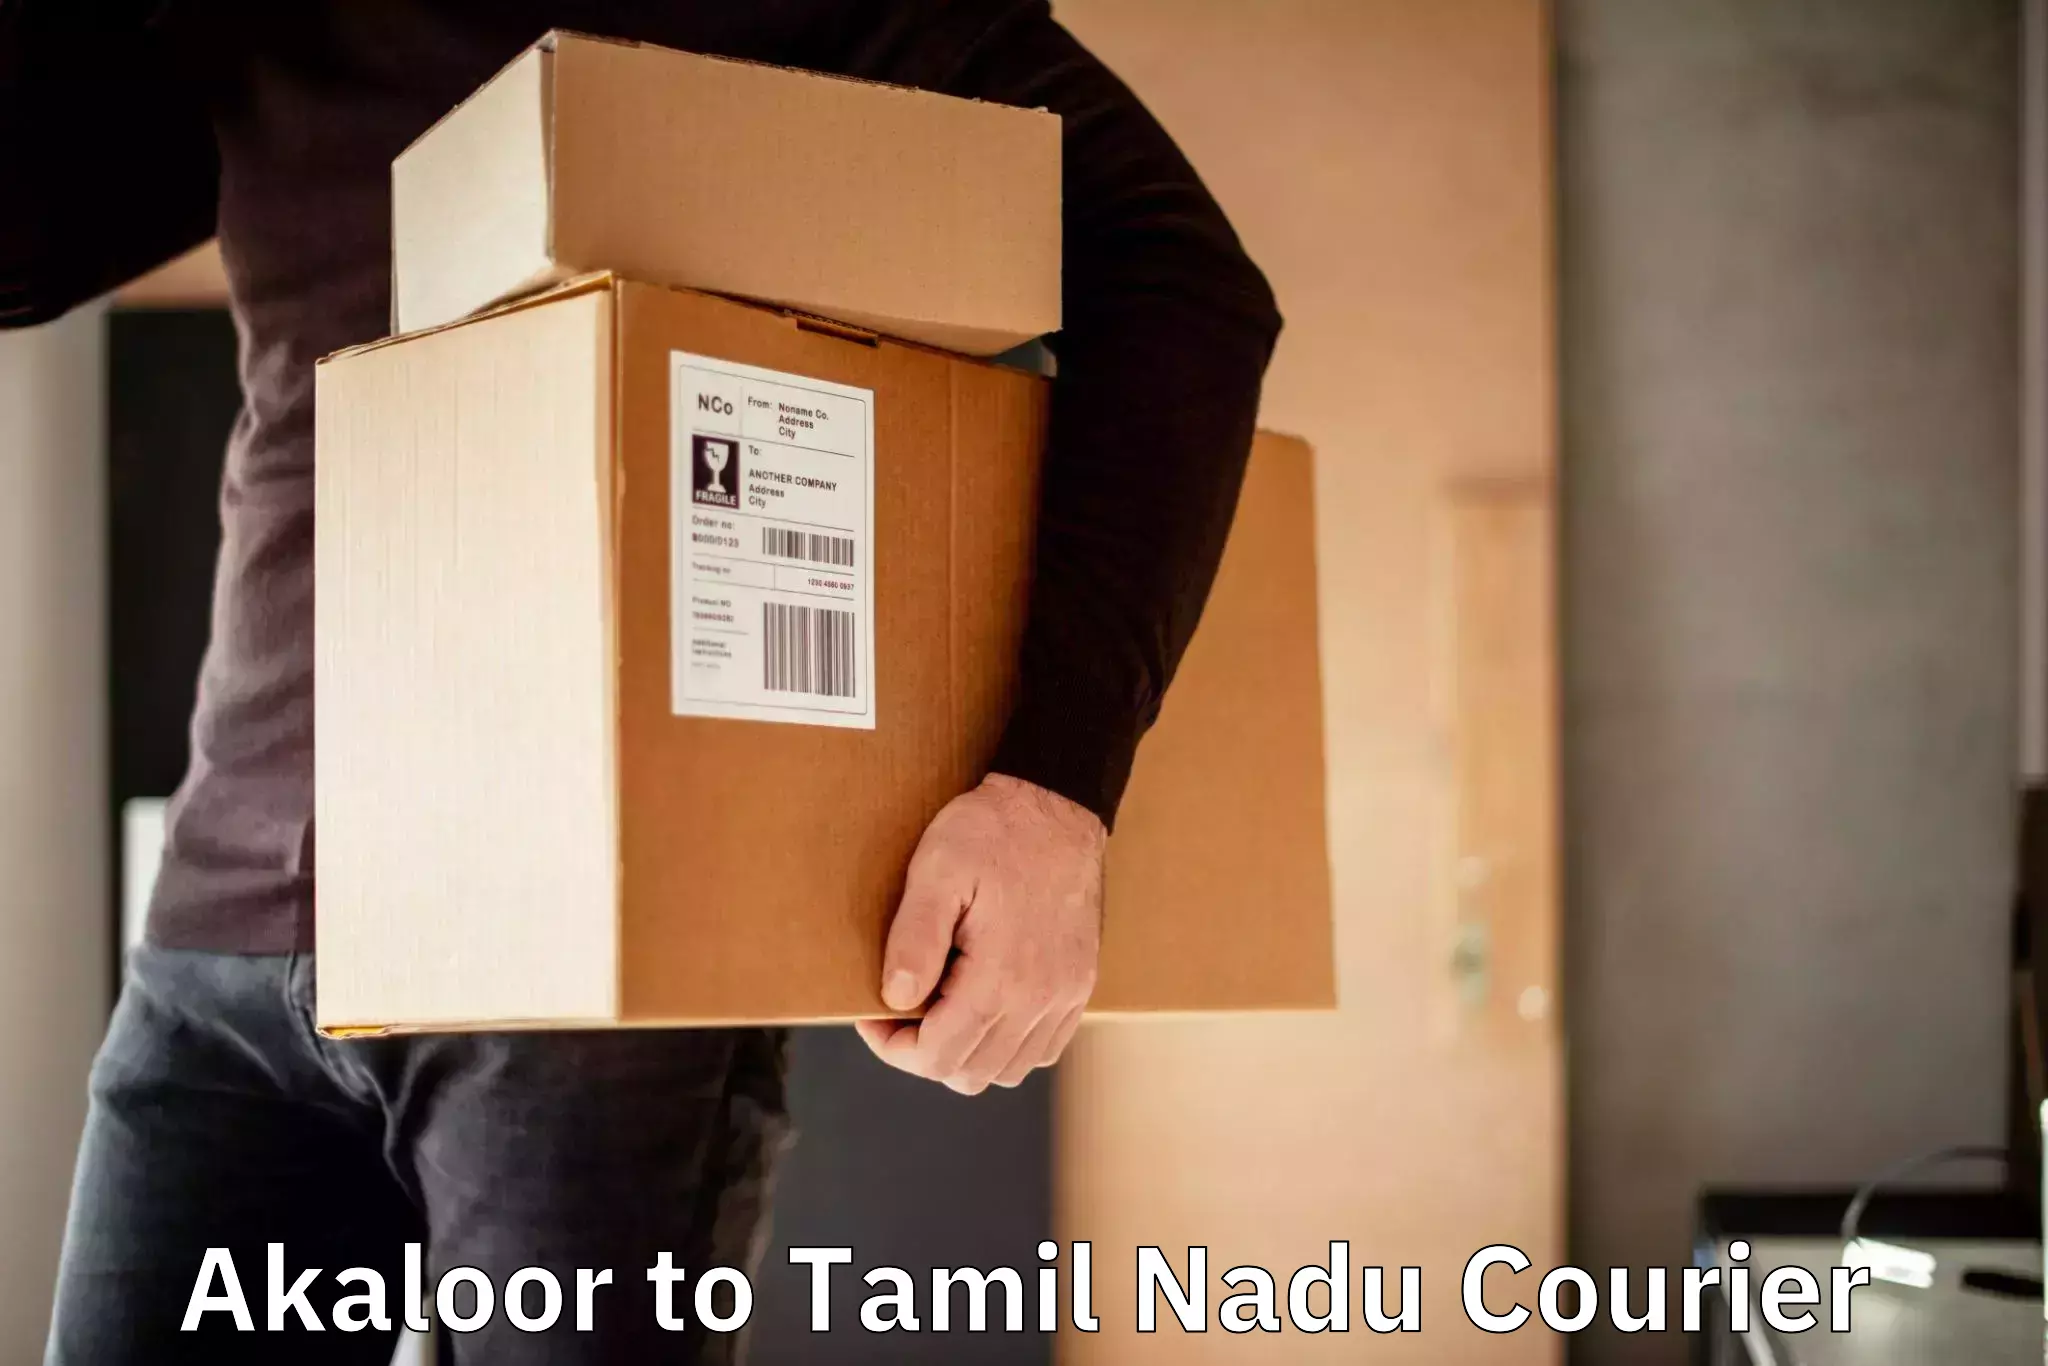 Courier service partnerships Akaloor to Kanchipuram